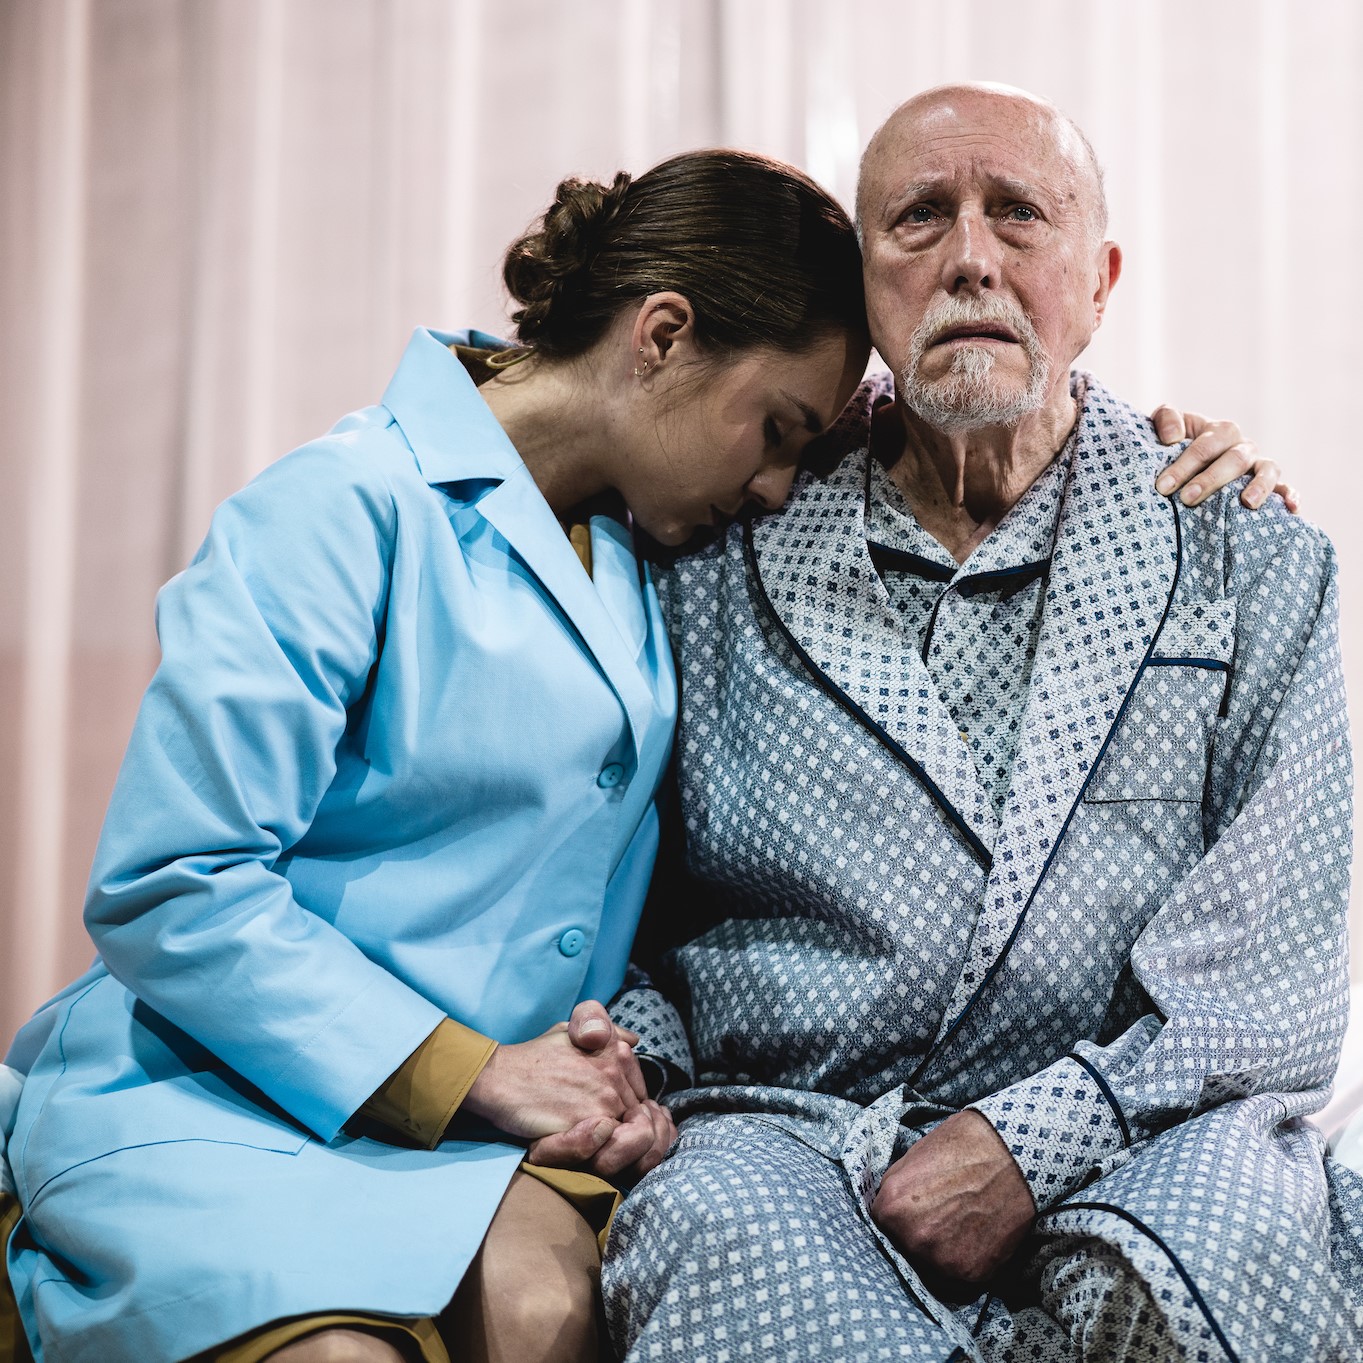 Starszy mężczyzna siedzi i smutno wpatruje się w przestrzeń. Obejmuje go młoda kobieta w stroju pielęgniarskim.